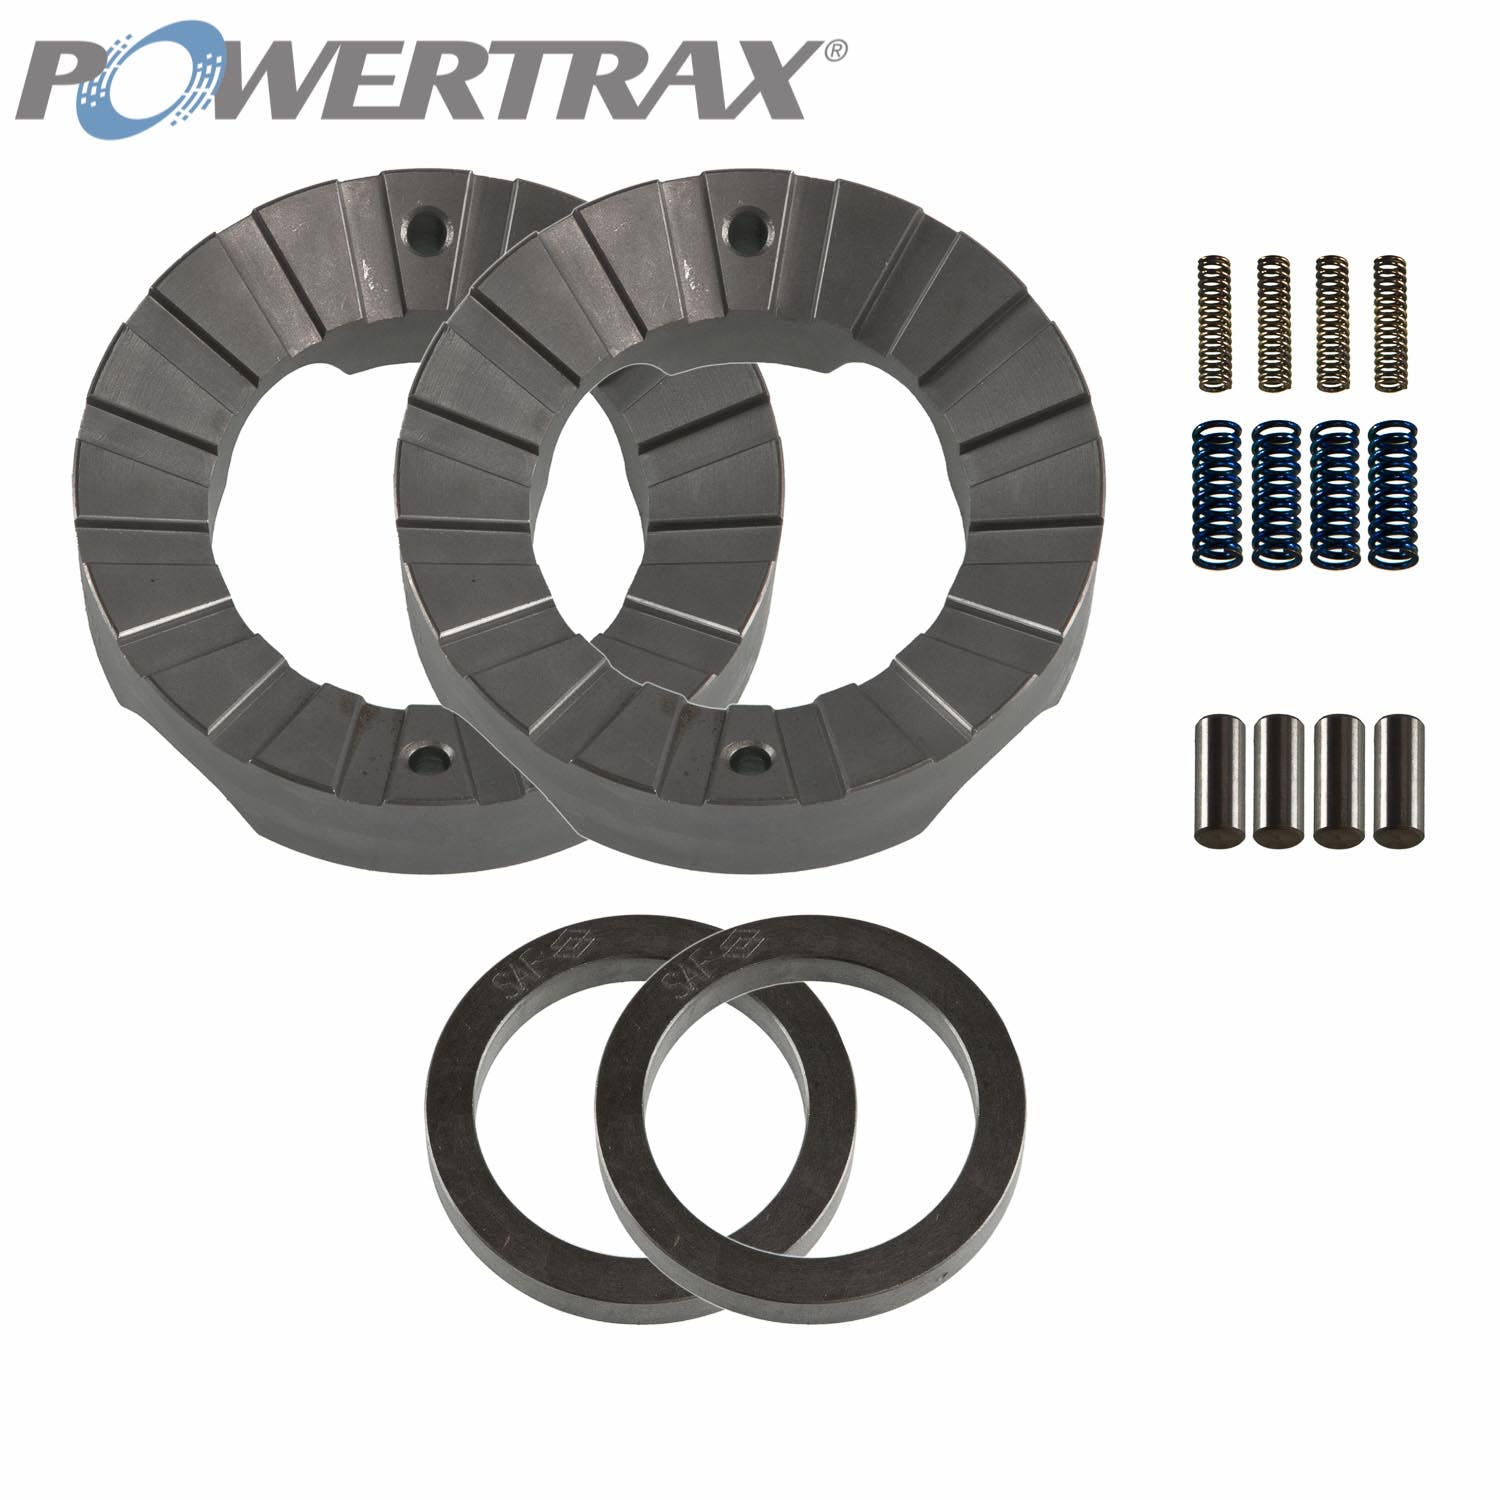 PowerTrax 1620-LR Lock Right Locker